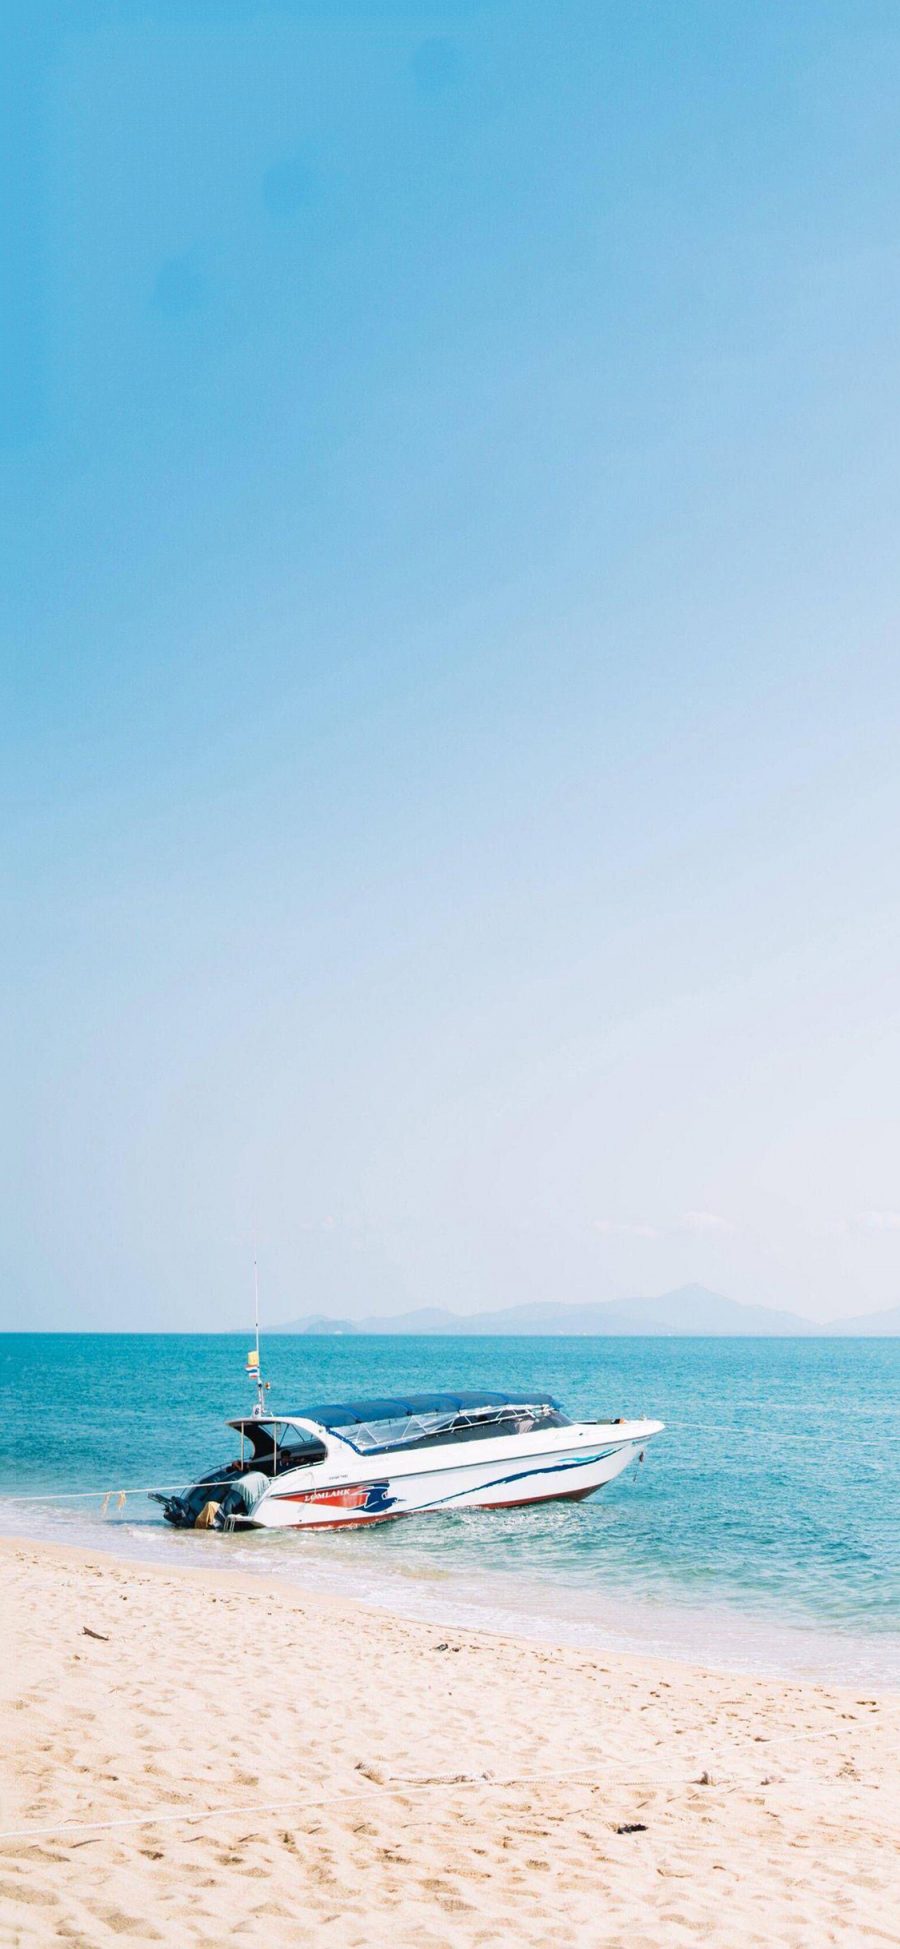 [2436×1125]快艇 船 海边 沙滩 蓝色 苹果手机壁纸图片